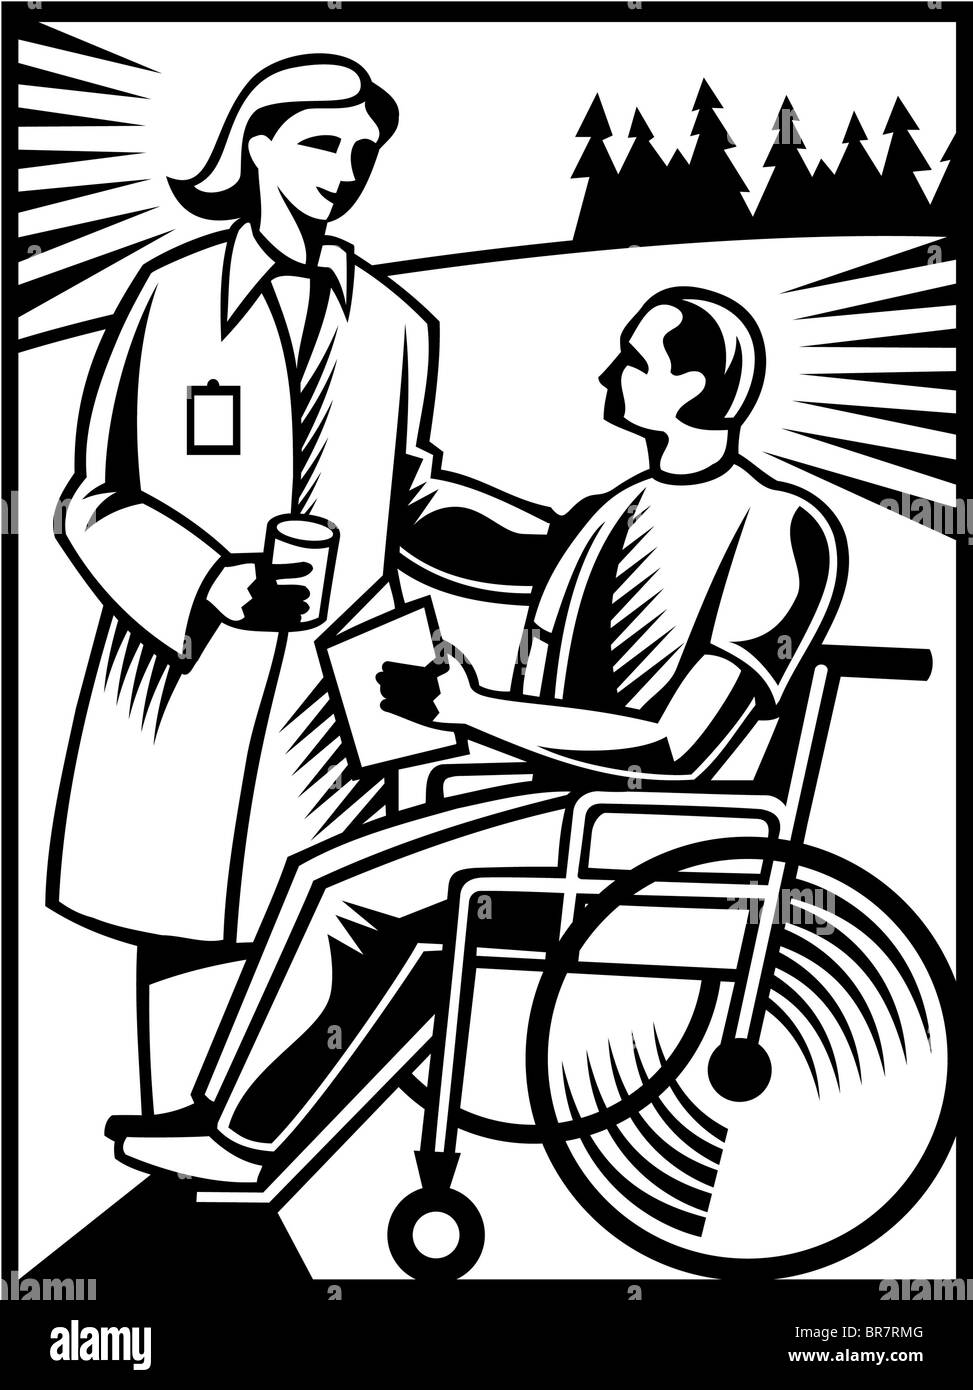 Un médecin parlant à un patient dans un fauteuil roulant en noir et blanc Banque D'Images